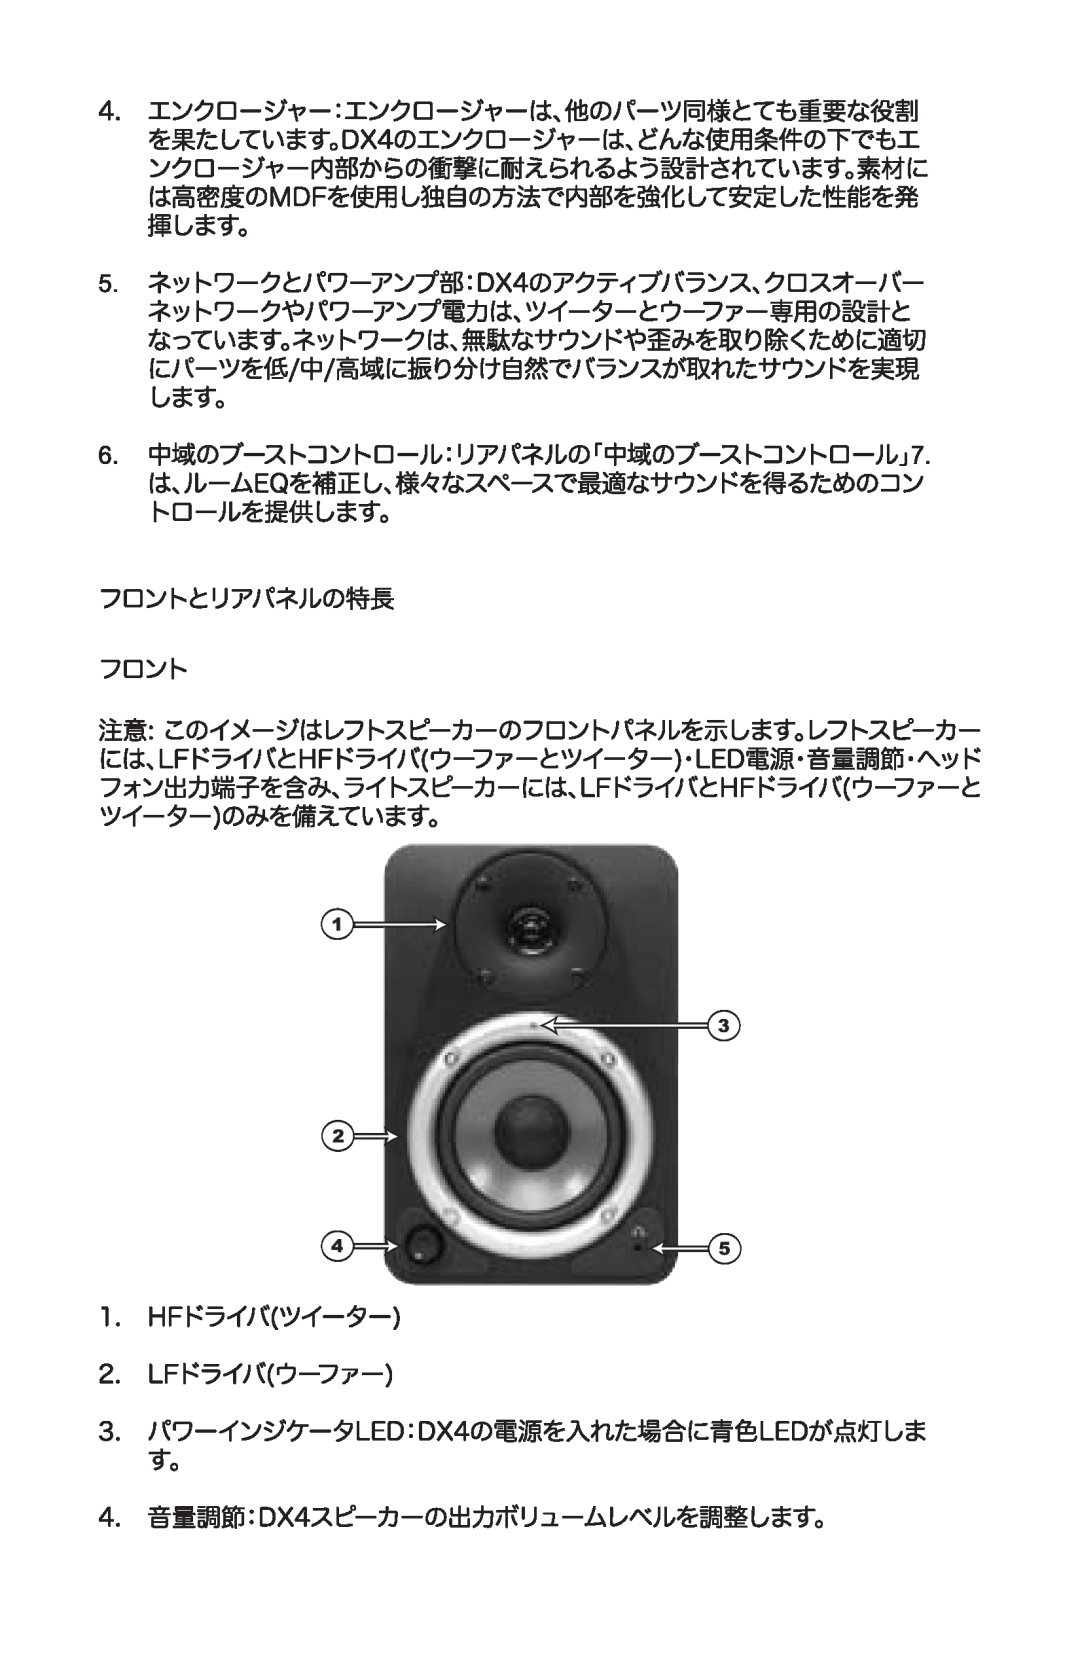 M-Audio DX4 manual 